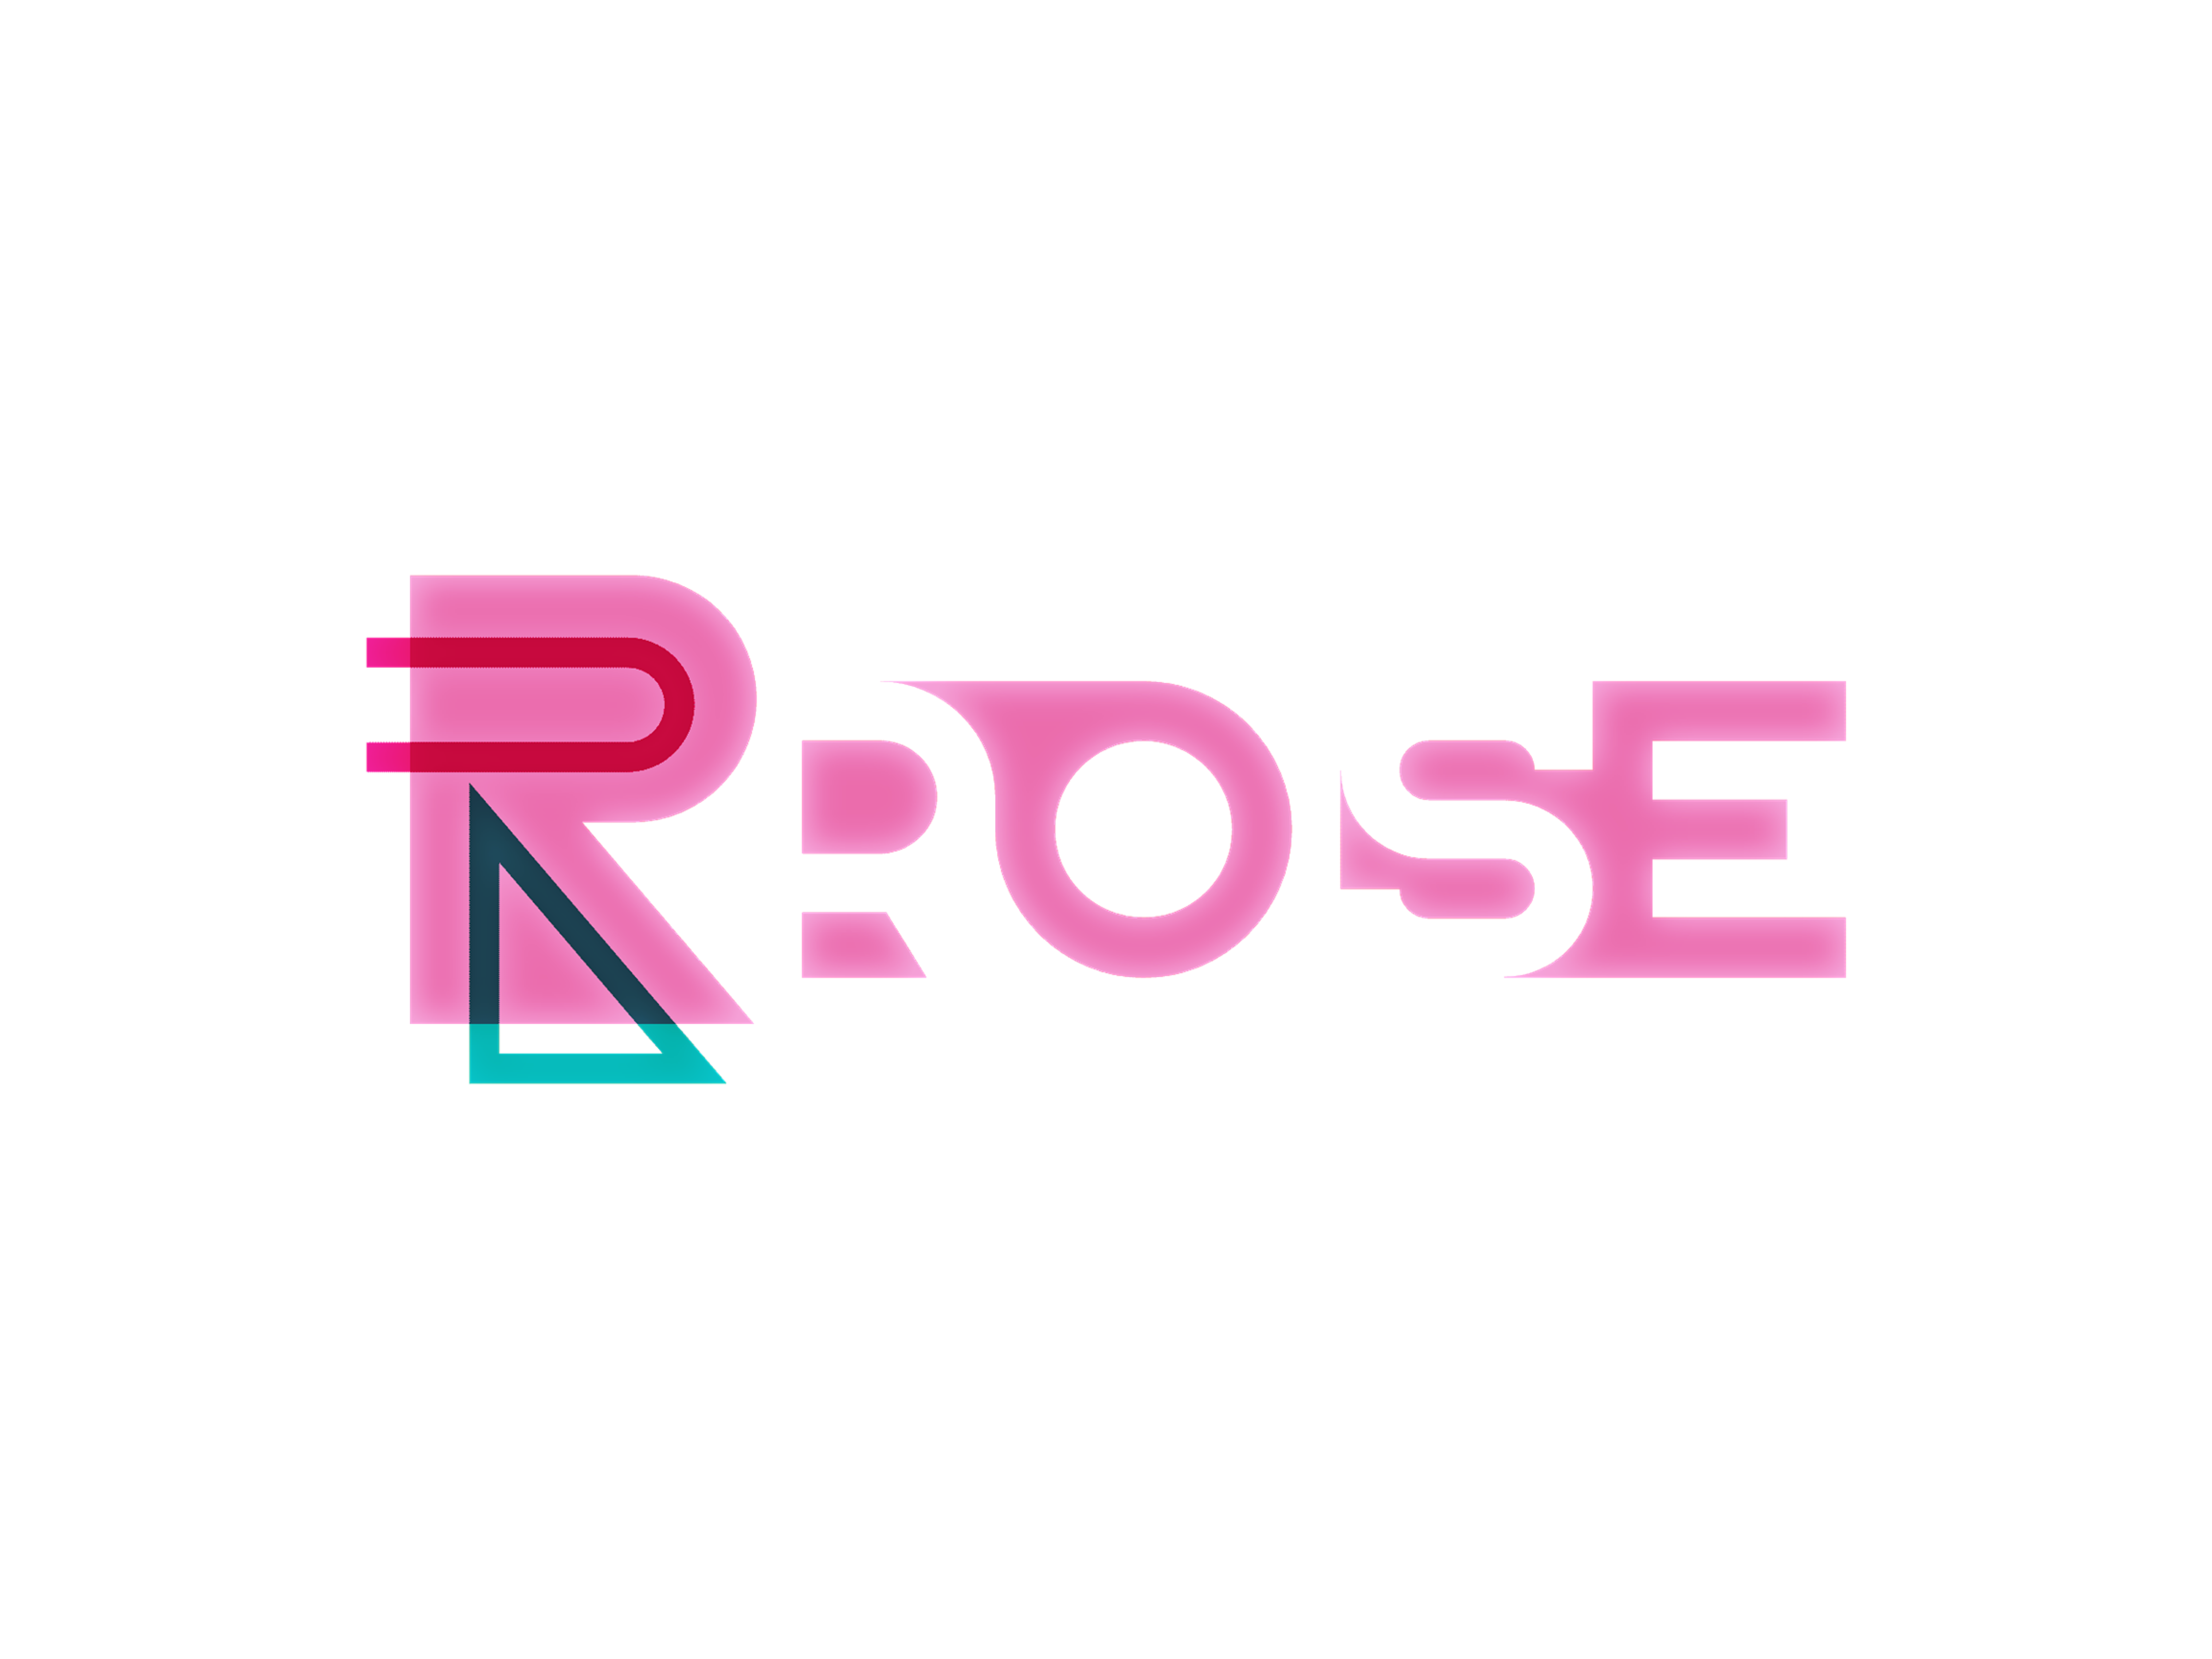 ROSE toy